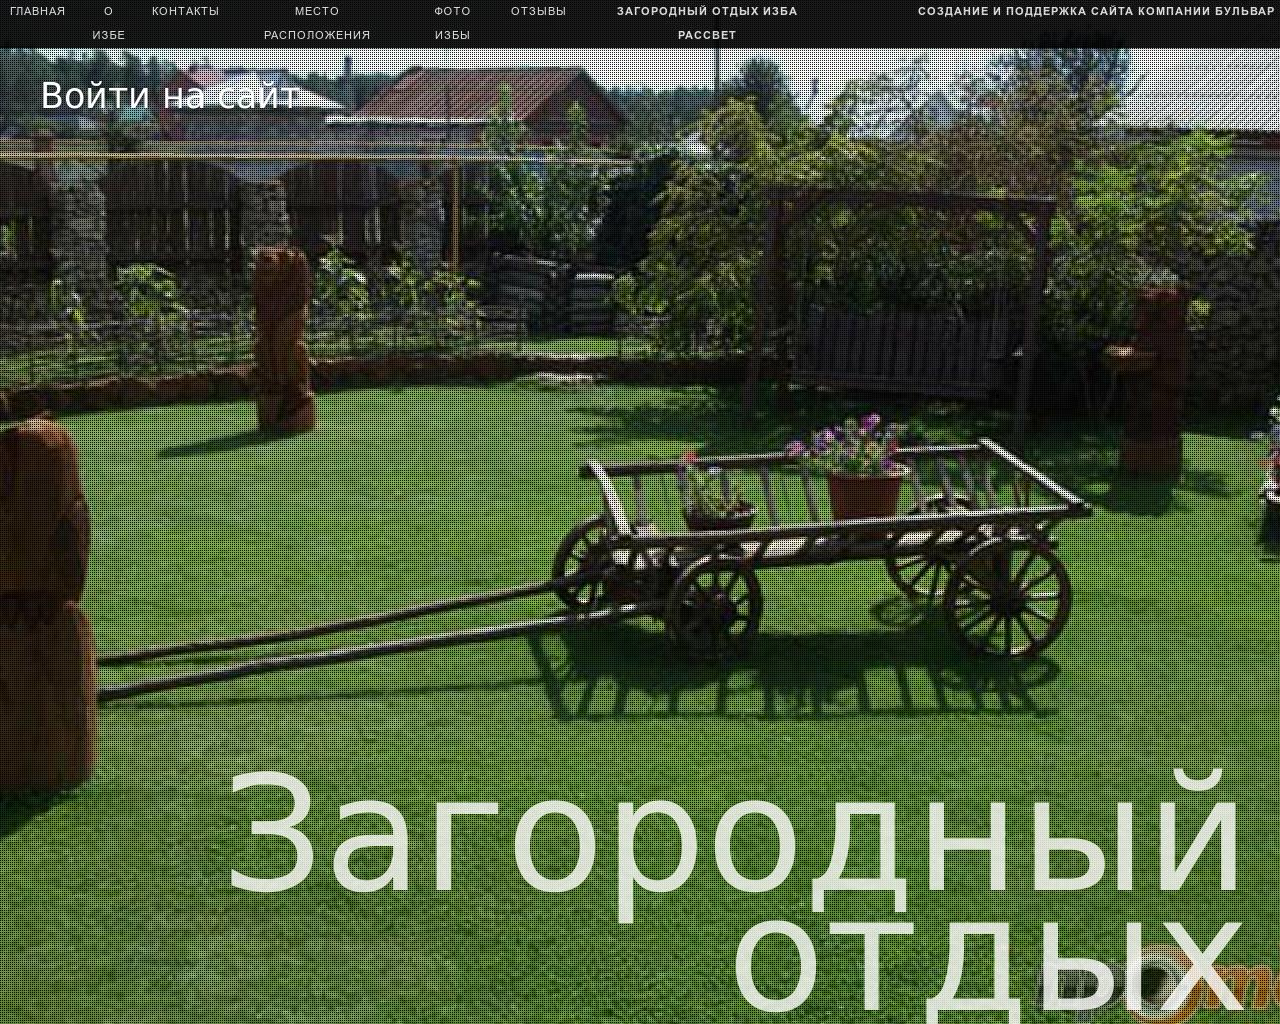 Изображение сайта izba63.ru в разрешении 1280x1024